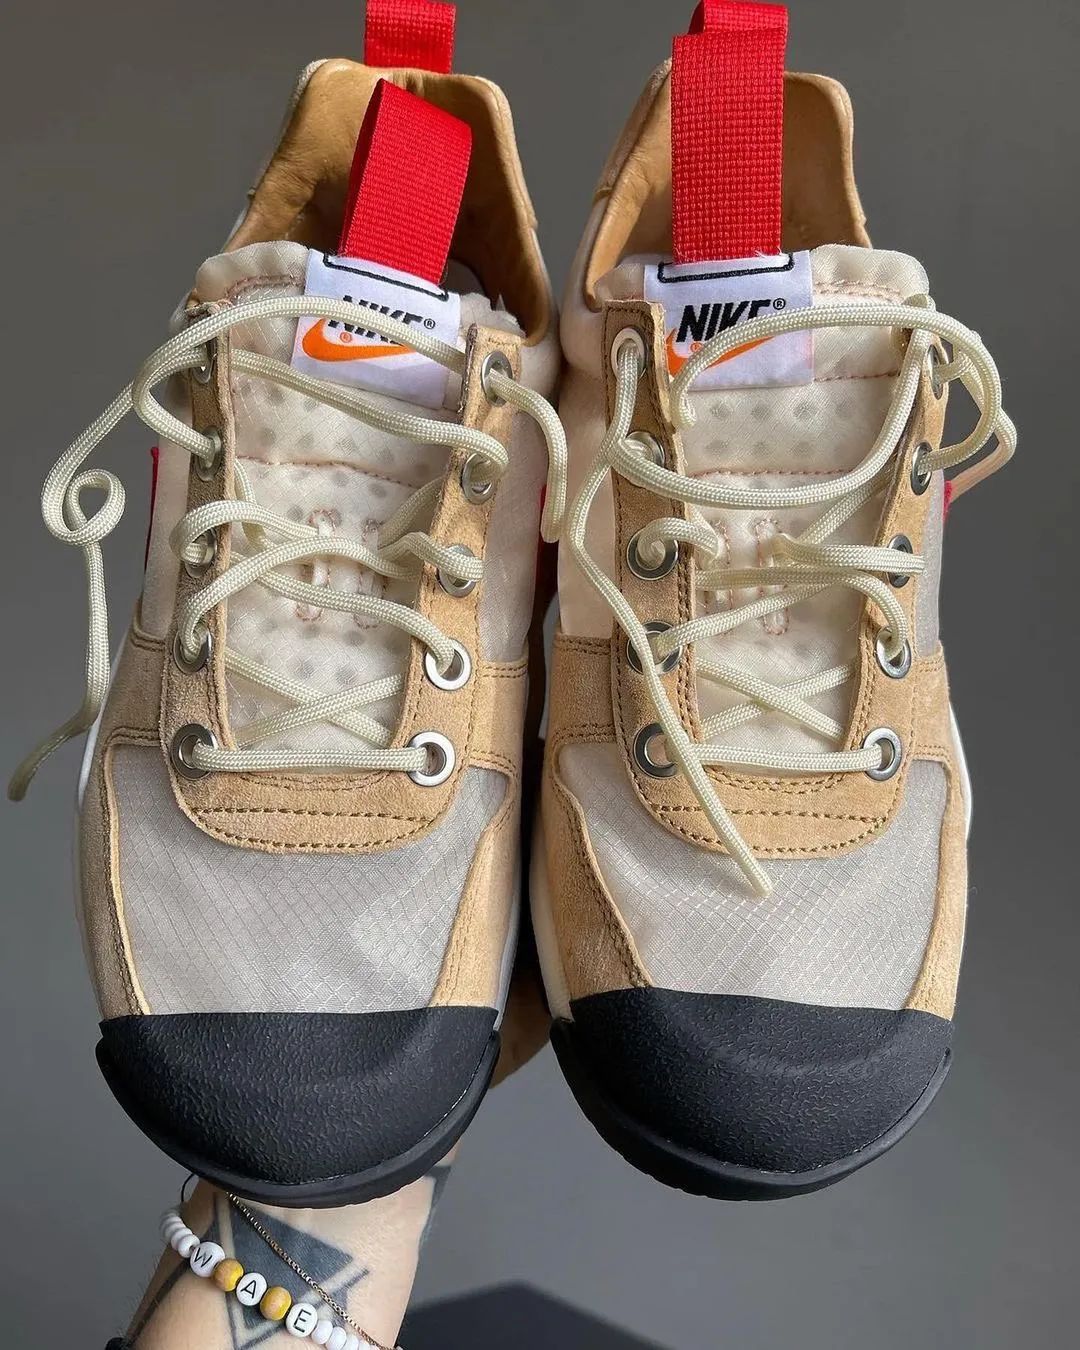 性骚扰、虐待员工！TS x Nike「火星鞋3.0」居然要恢复发售了？